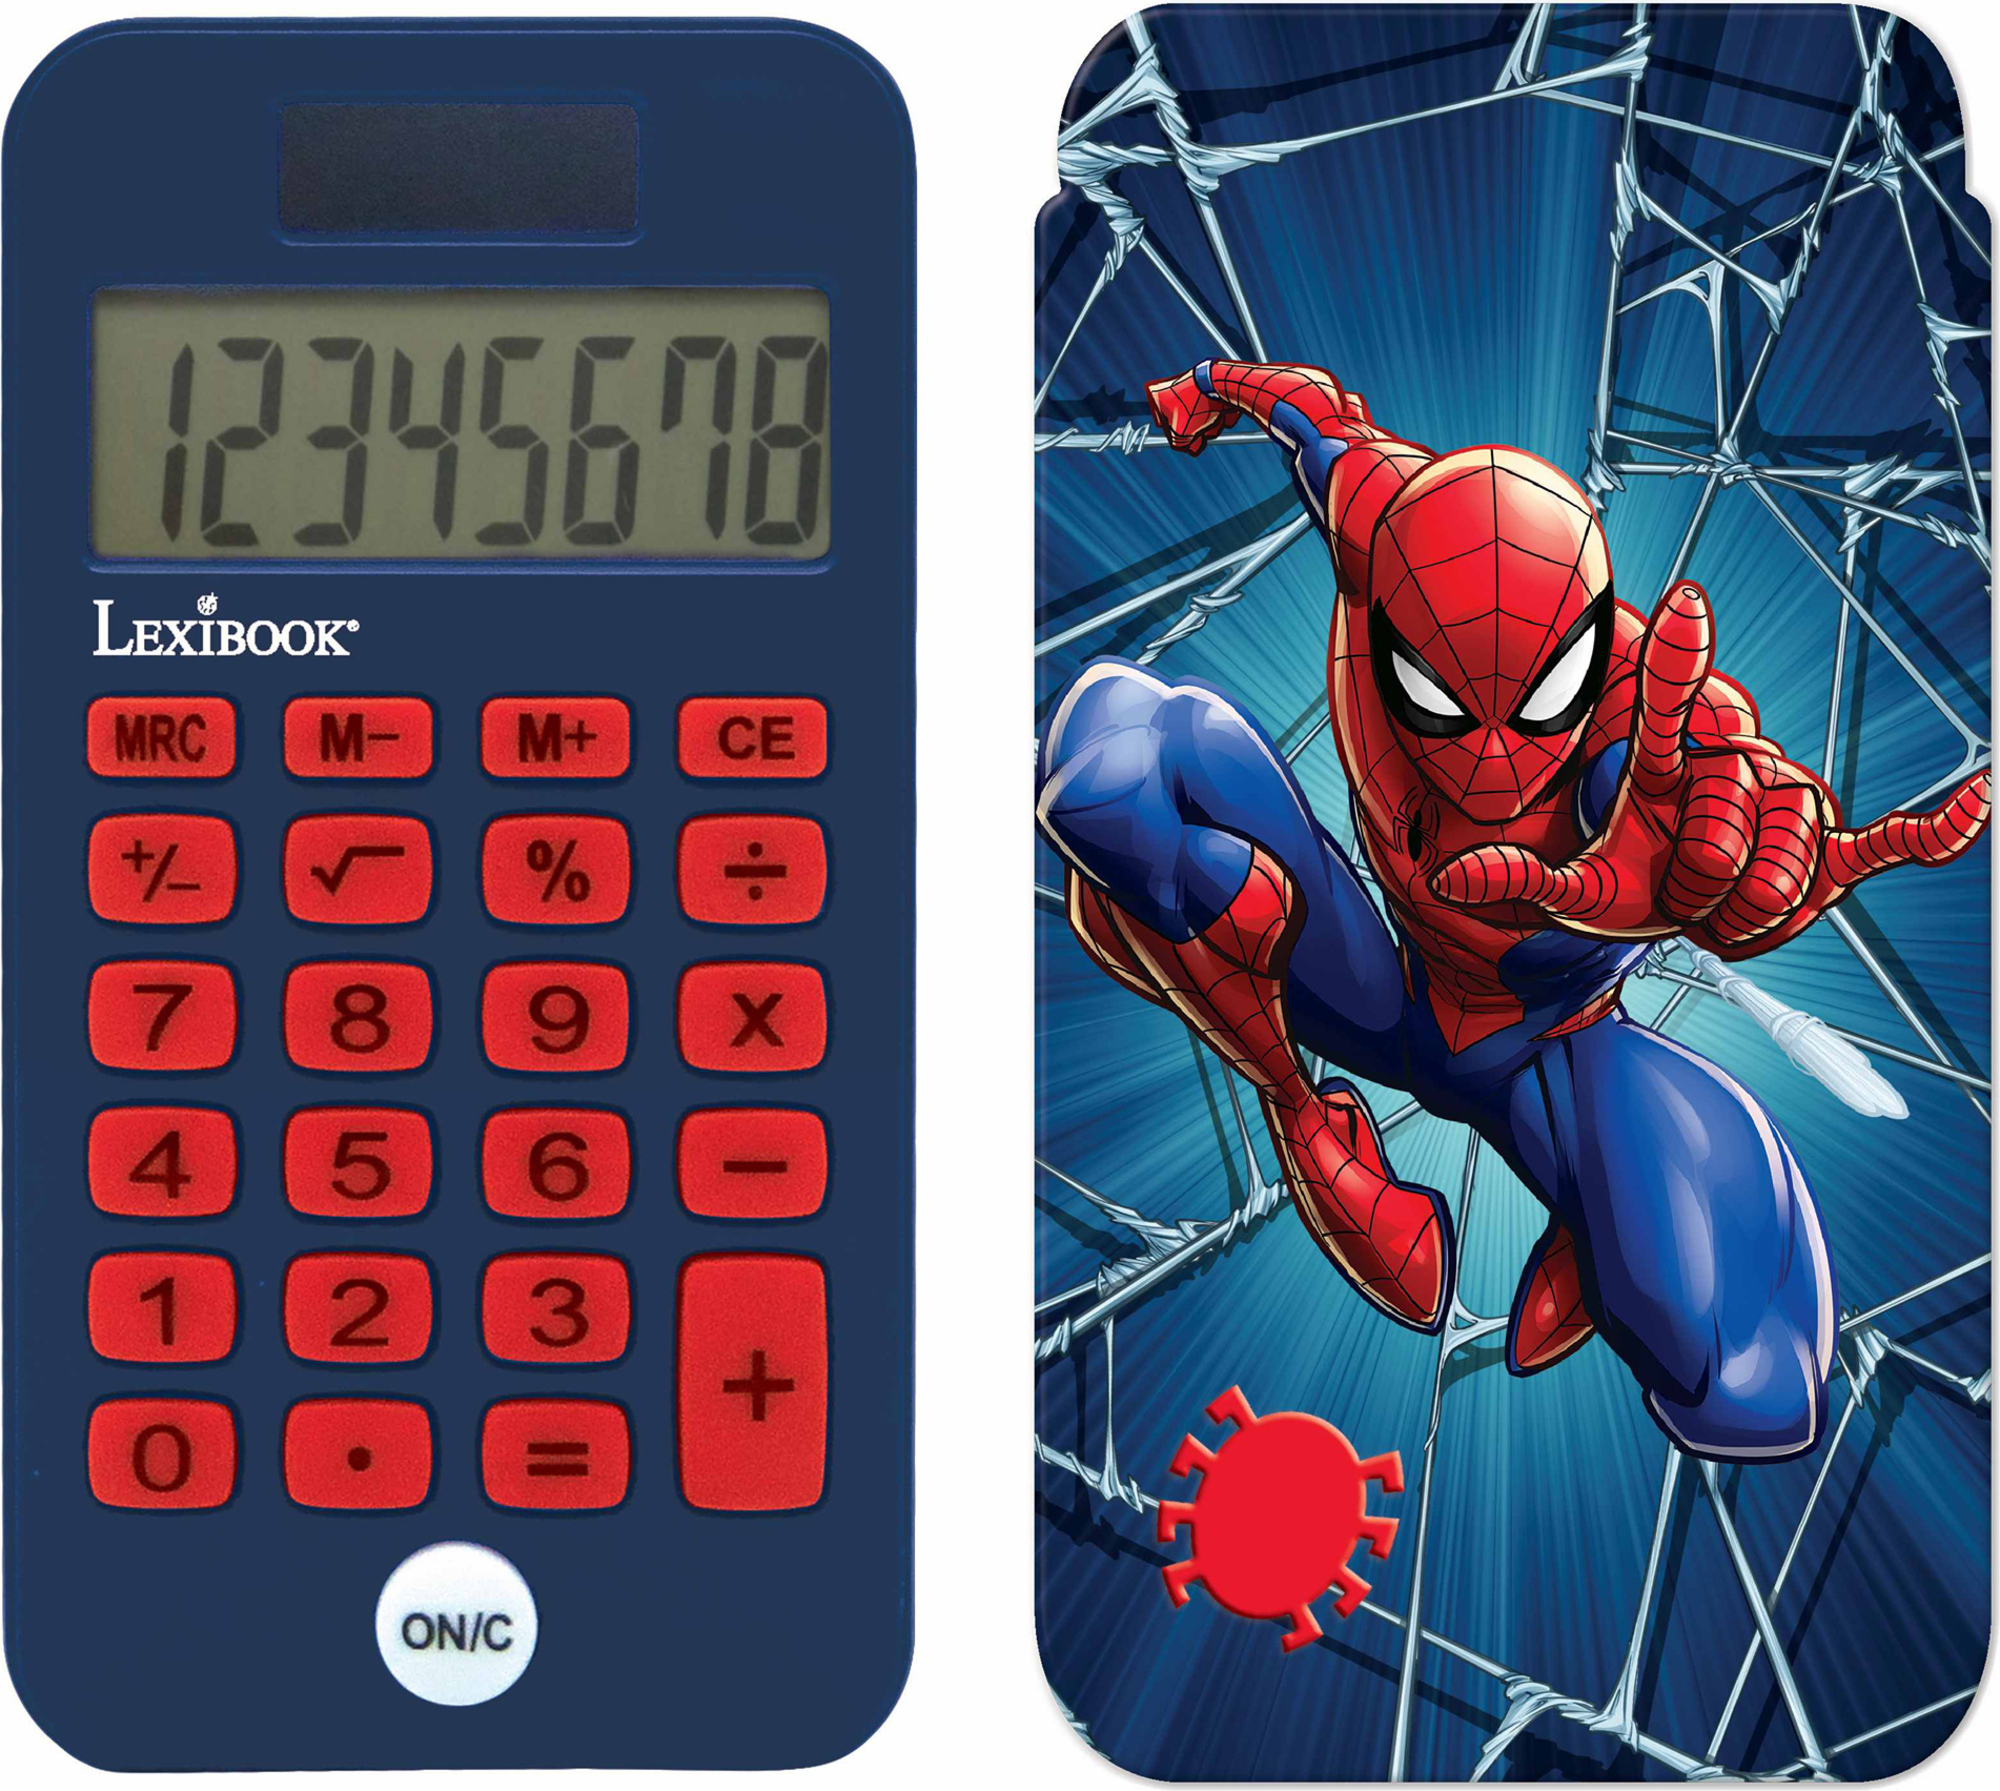 Kapesní kalkulačka Spider-Man